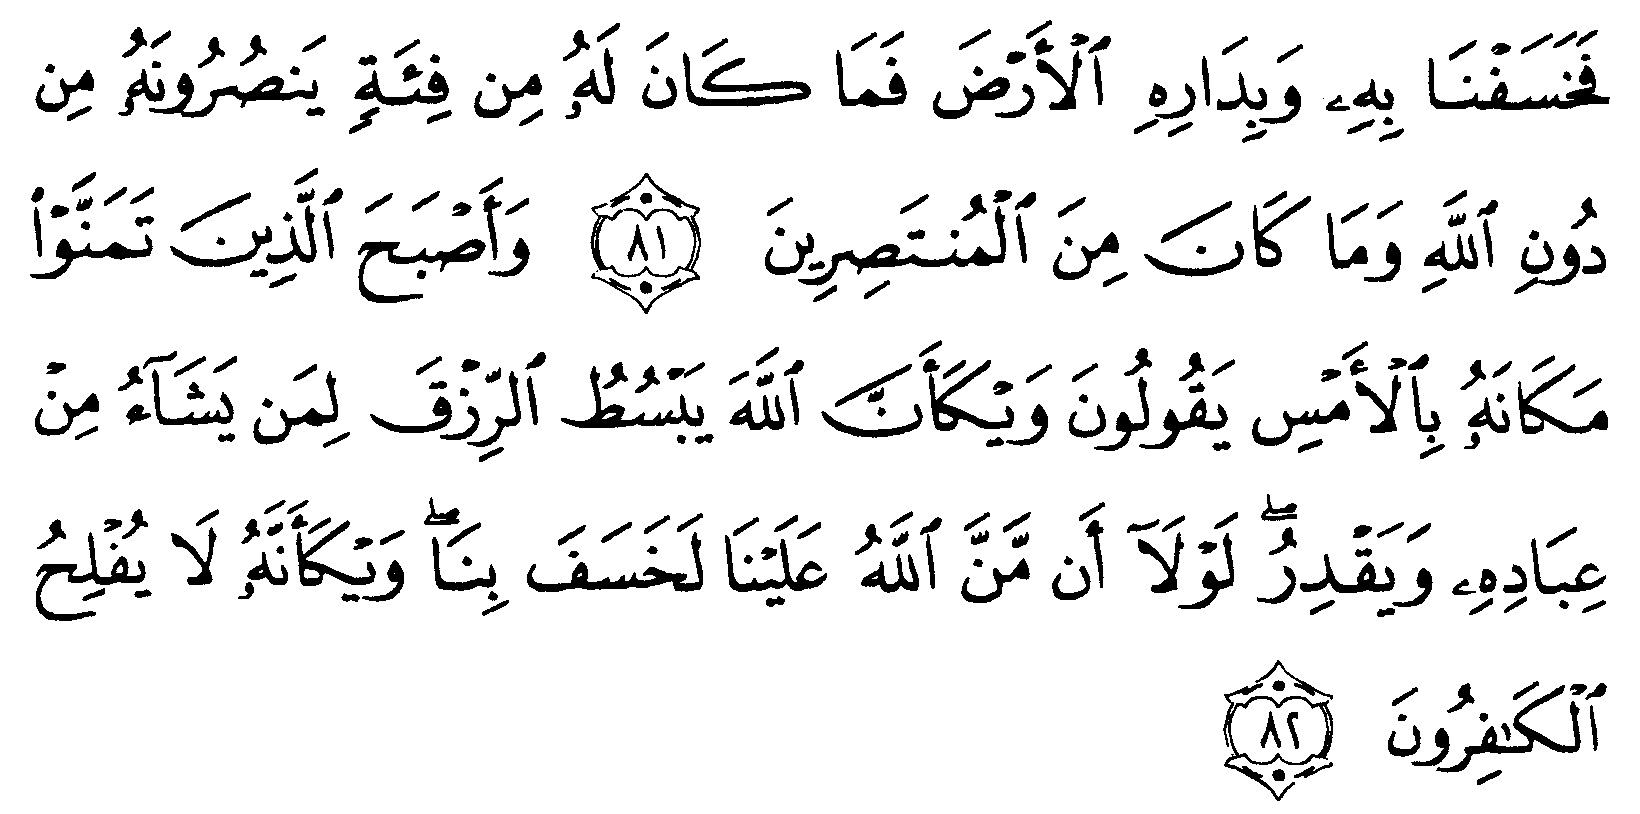 Tafsir Ibnu Katsir Surah Al-Qashash ayat 81-82 (27 